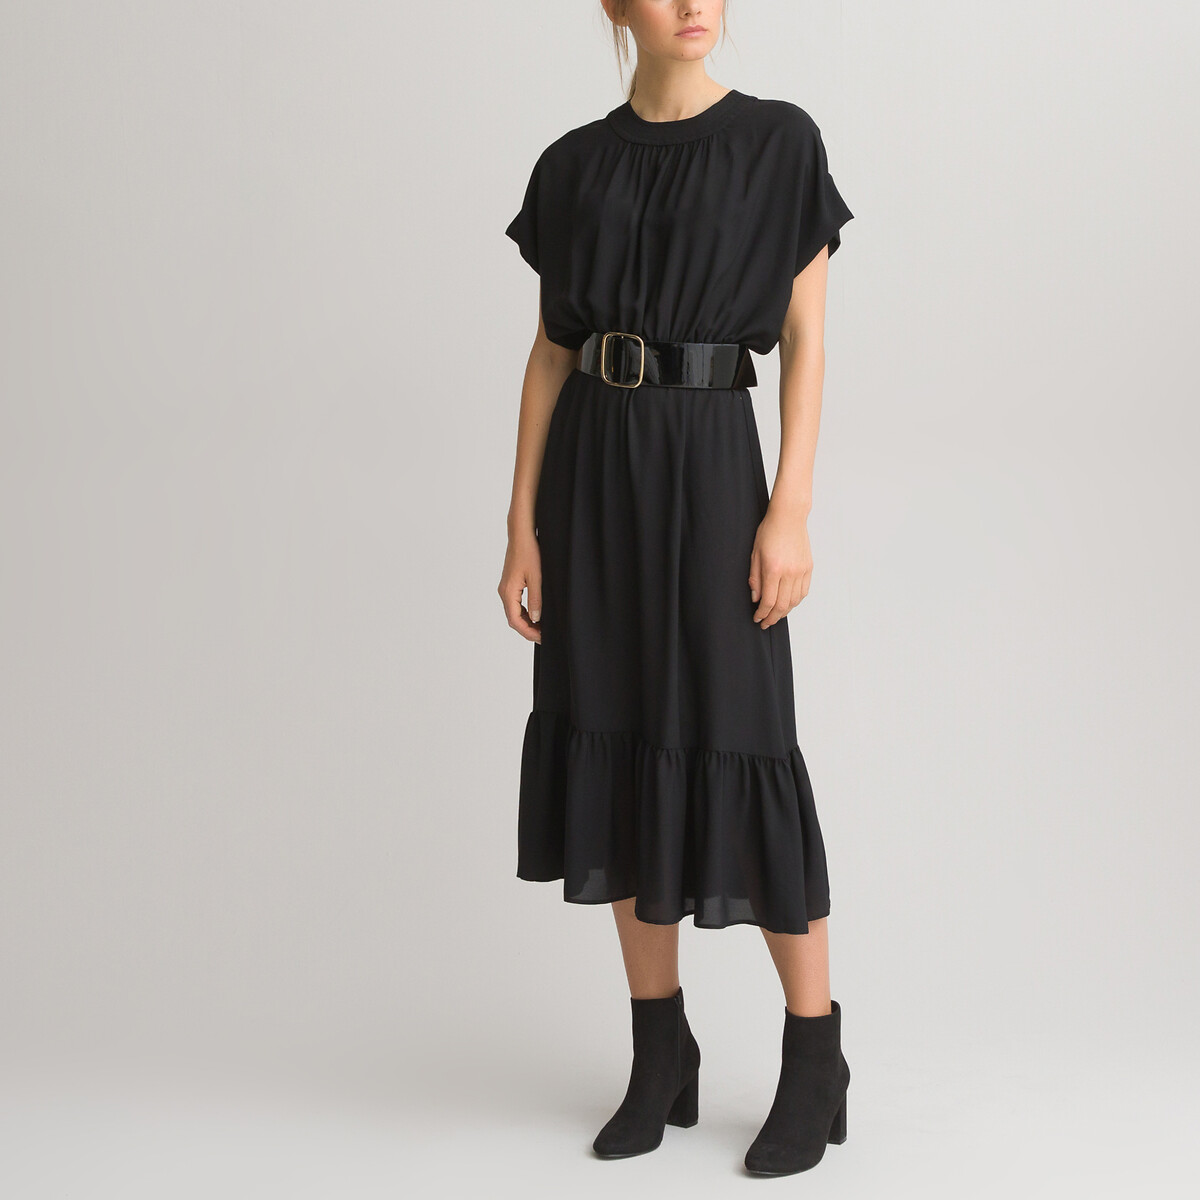 Платье LaRedoute Длинное с короткими рукавами 34 (FR) - 40 (RUS) черный, размер 34 (FR) - 40 (RUS) Длинное с короткими рукавами 34 (FR) - 40 (RUS) черный - фото 1